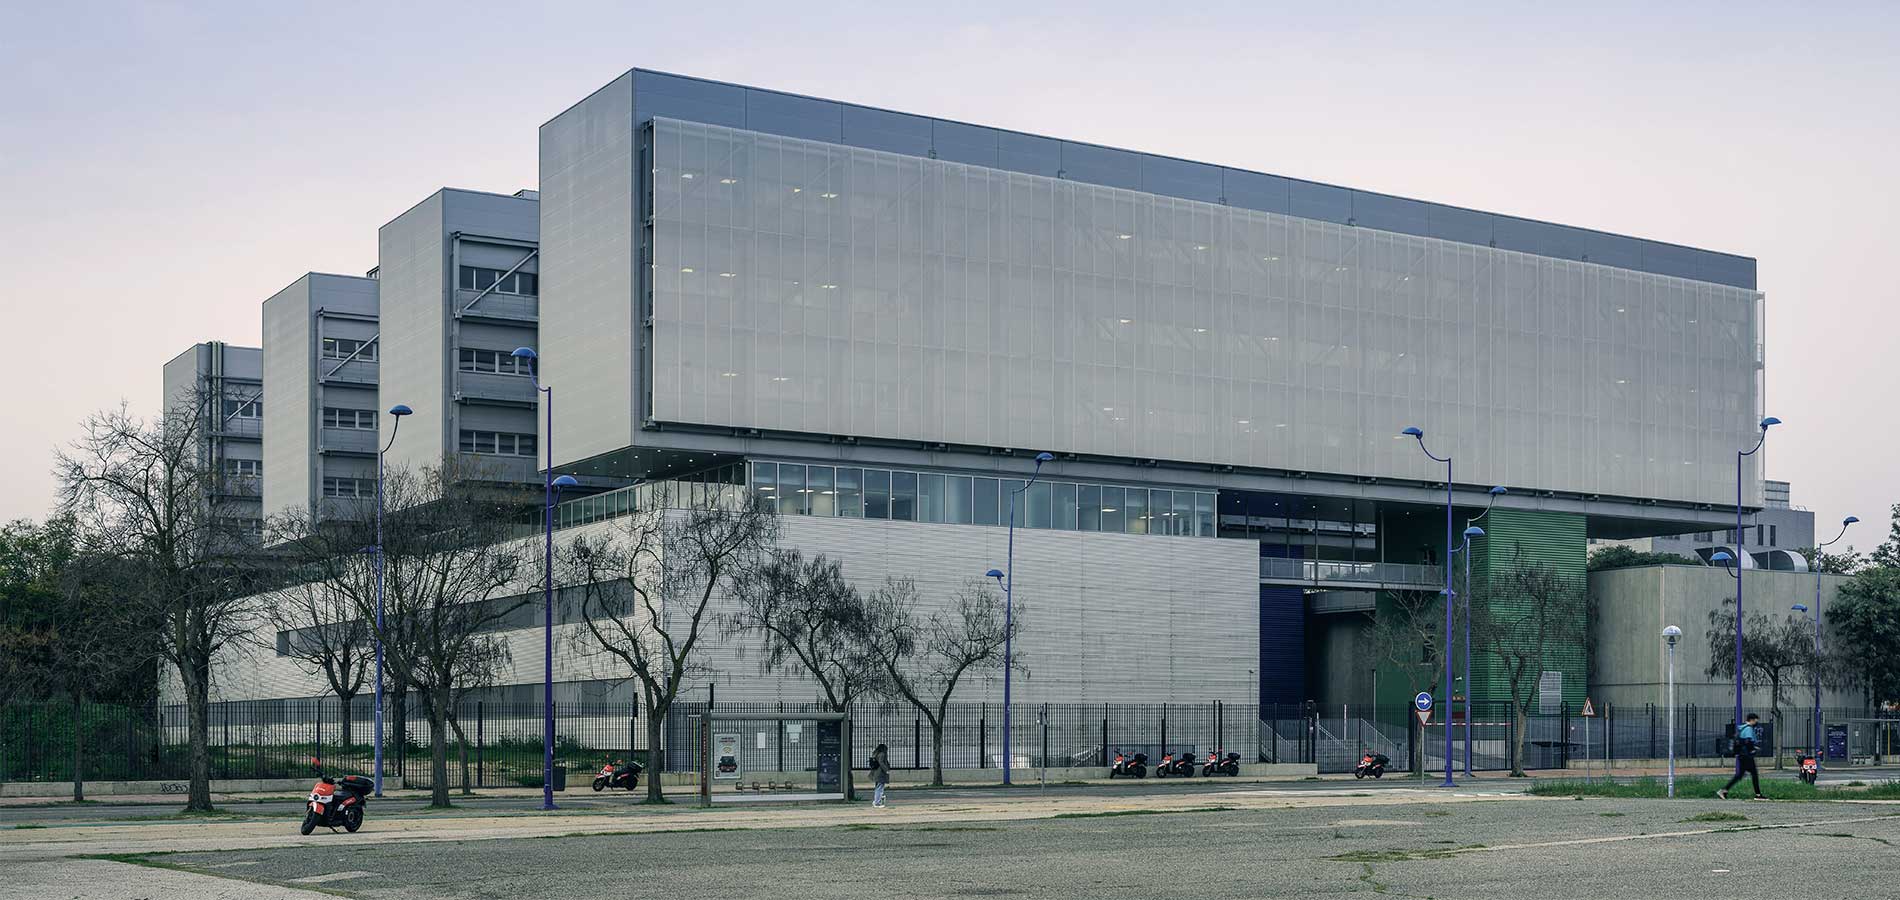 Centro Andalucía Tech Escuela Politécnica Superior (CATEPS)